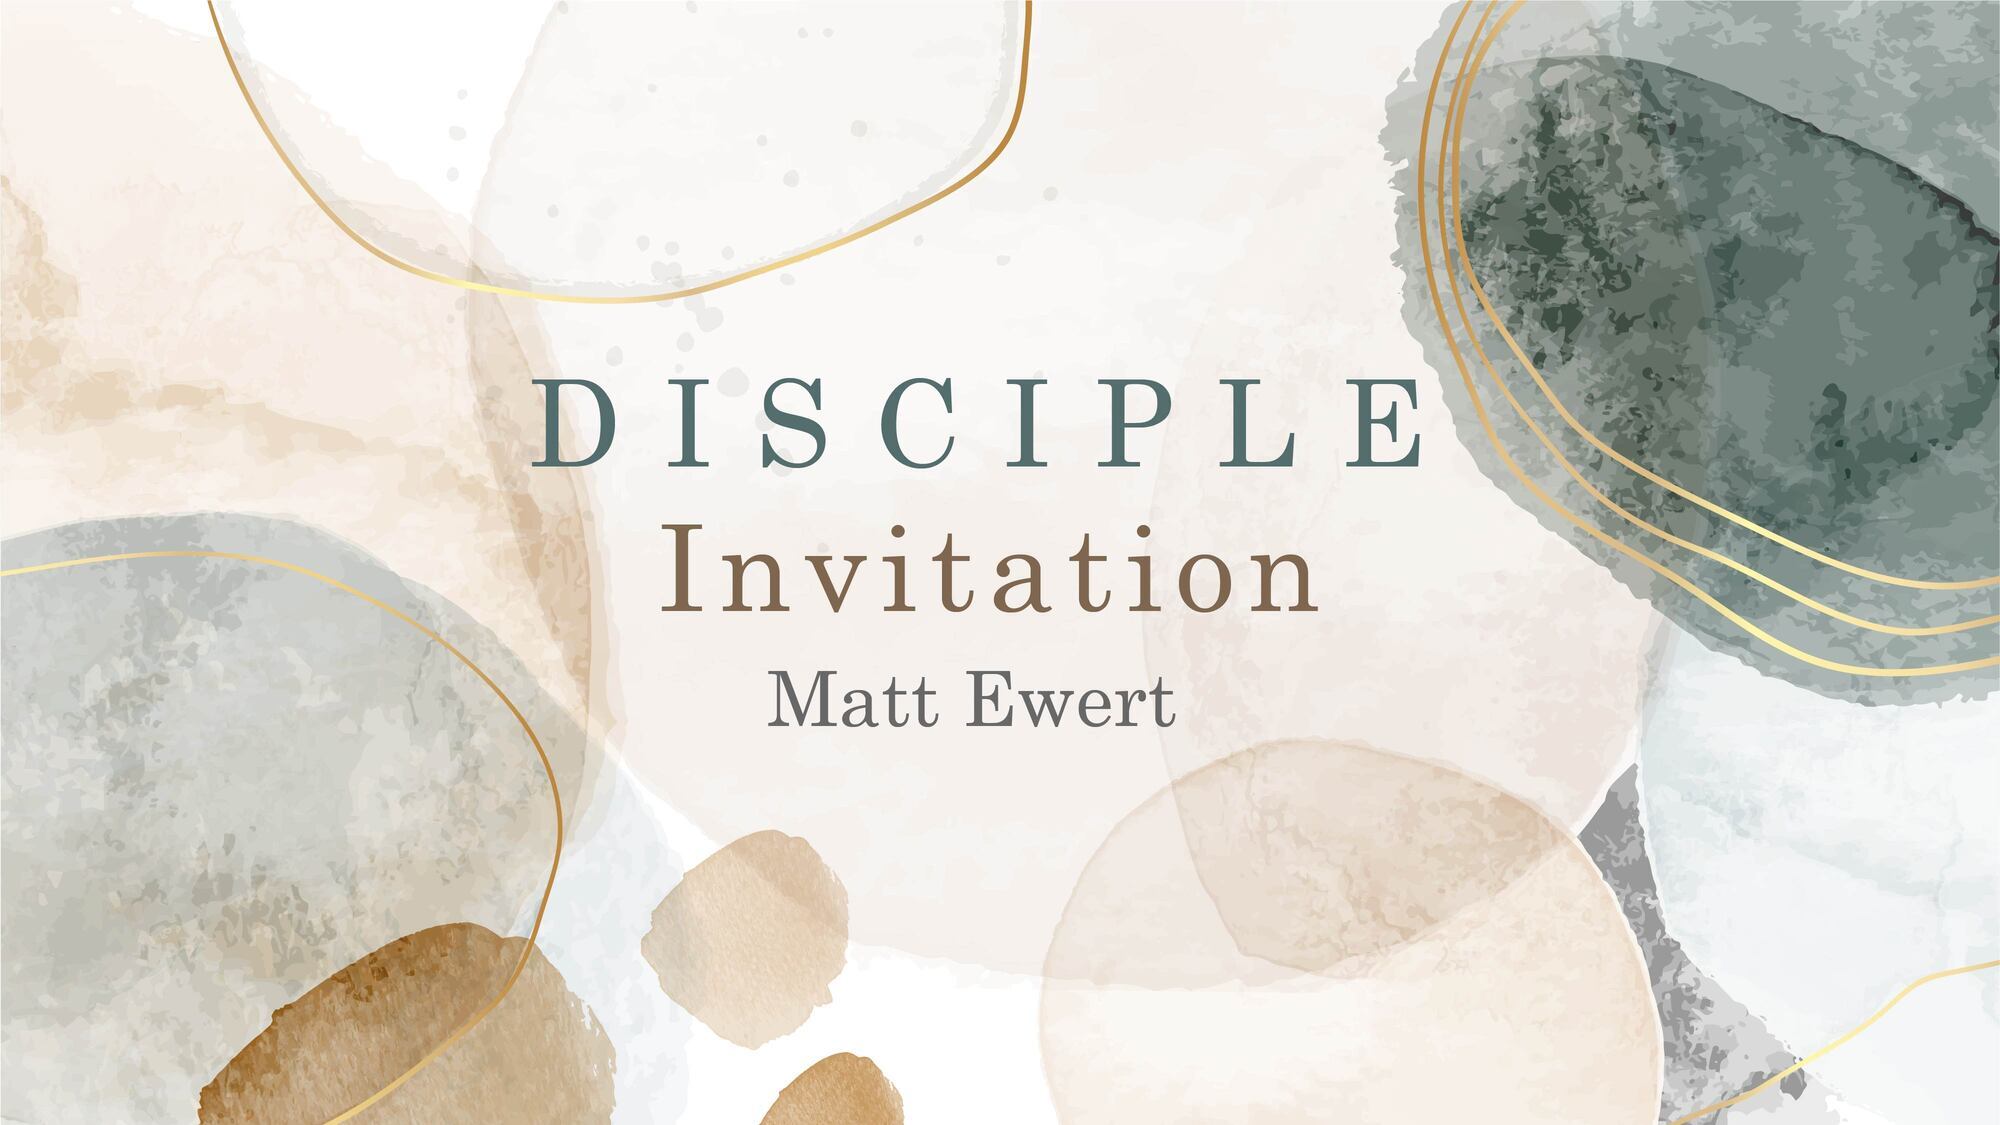 Preview of DISCIPLE: Invitation